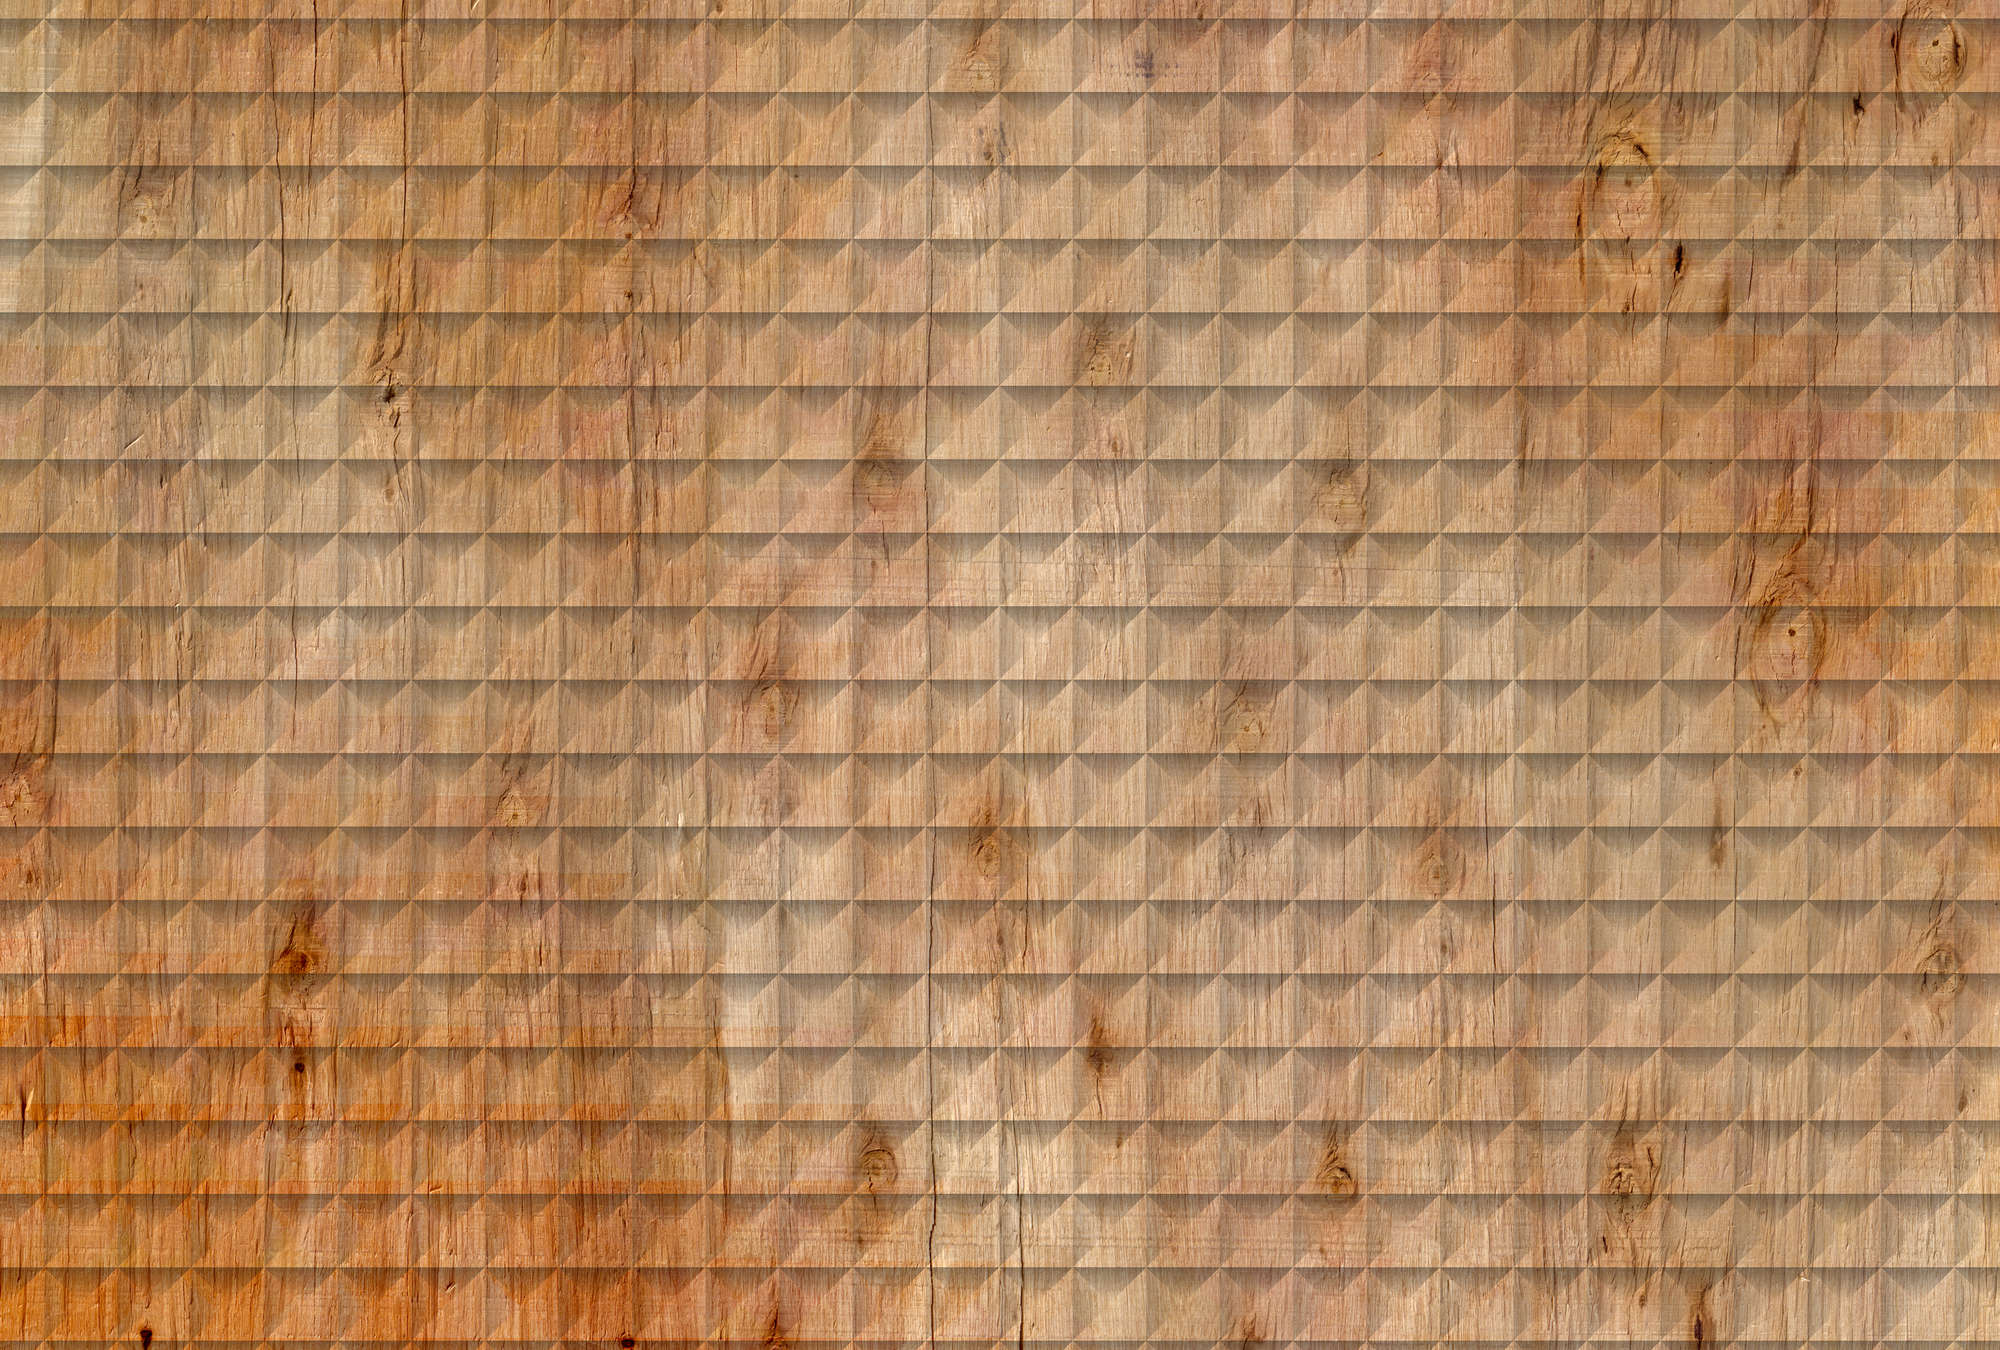             Photo wallpaper wood look, grain & 3D pattern - brown, orange, black
        